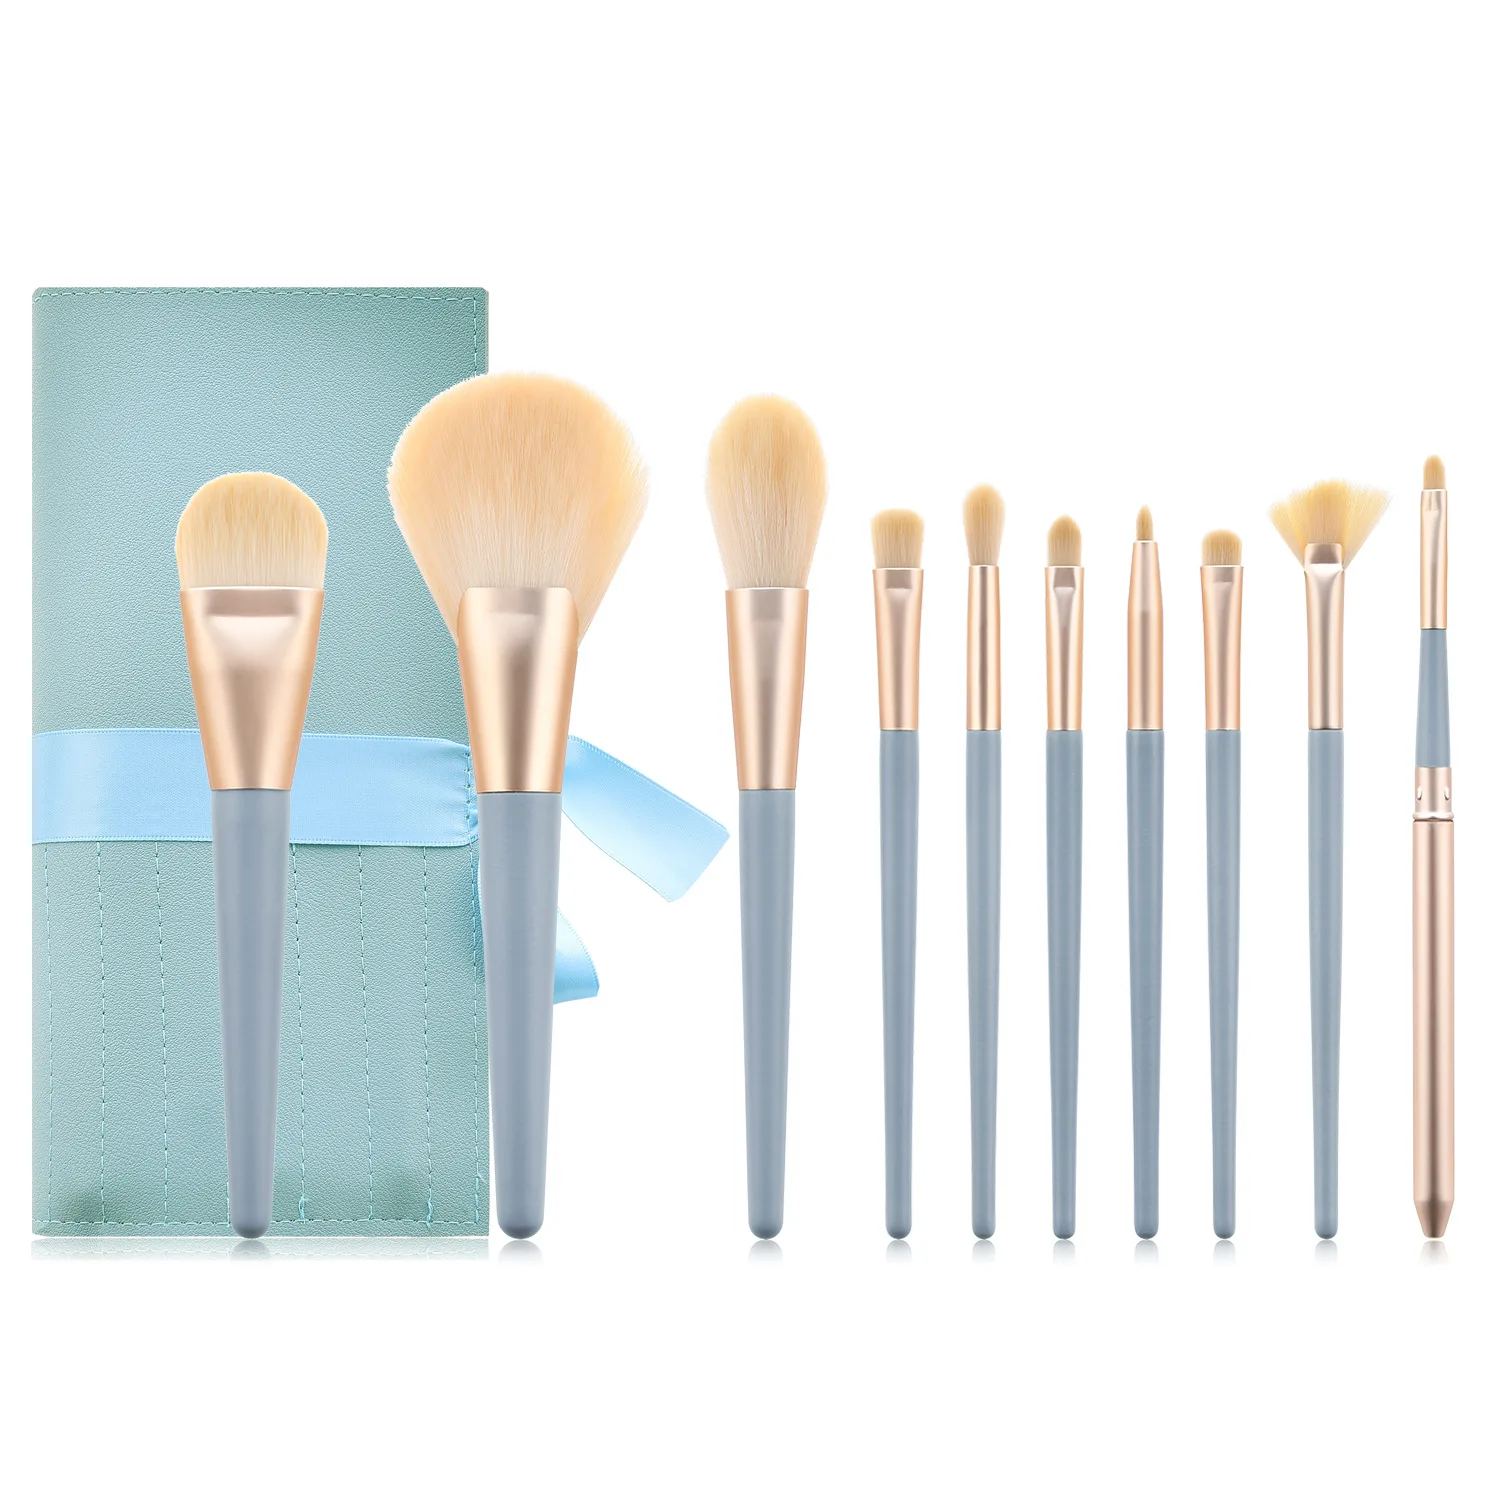 2020 NewProfessional Makeup Brush  Crystal Brush Set Acrylic Handle Foundation Blush Brush Powder Mixed Eye Shadow Tool Kit